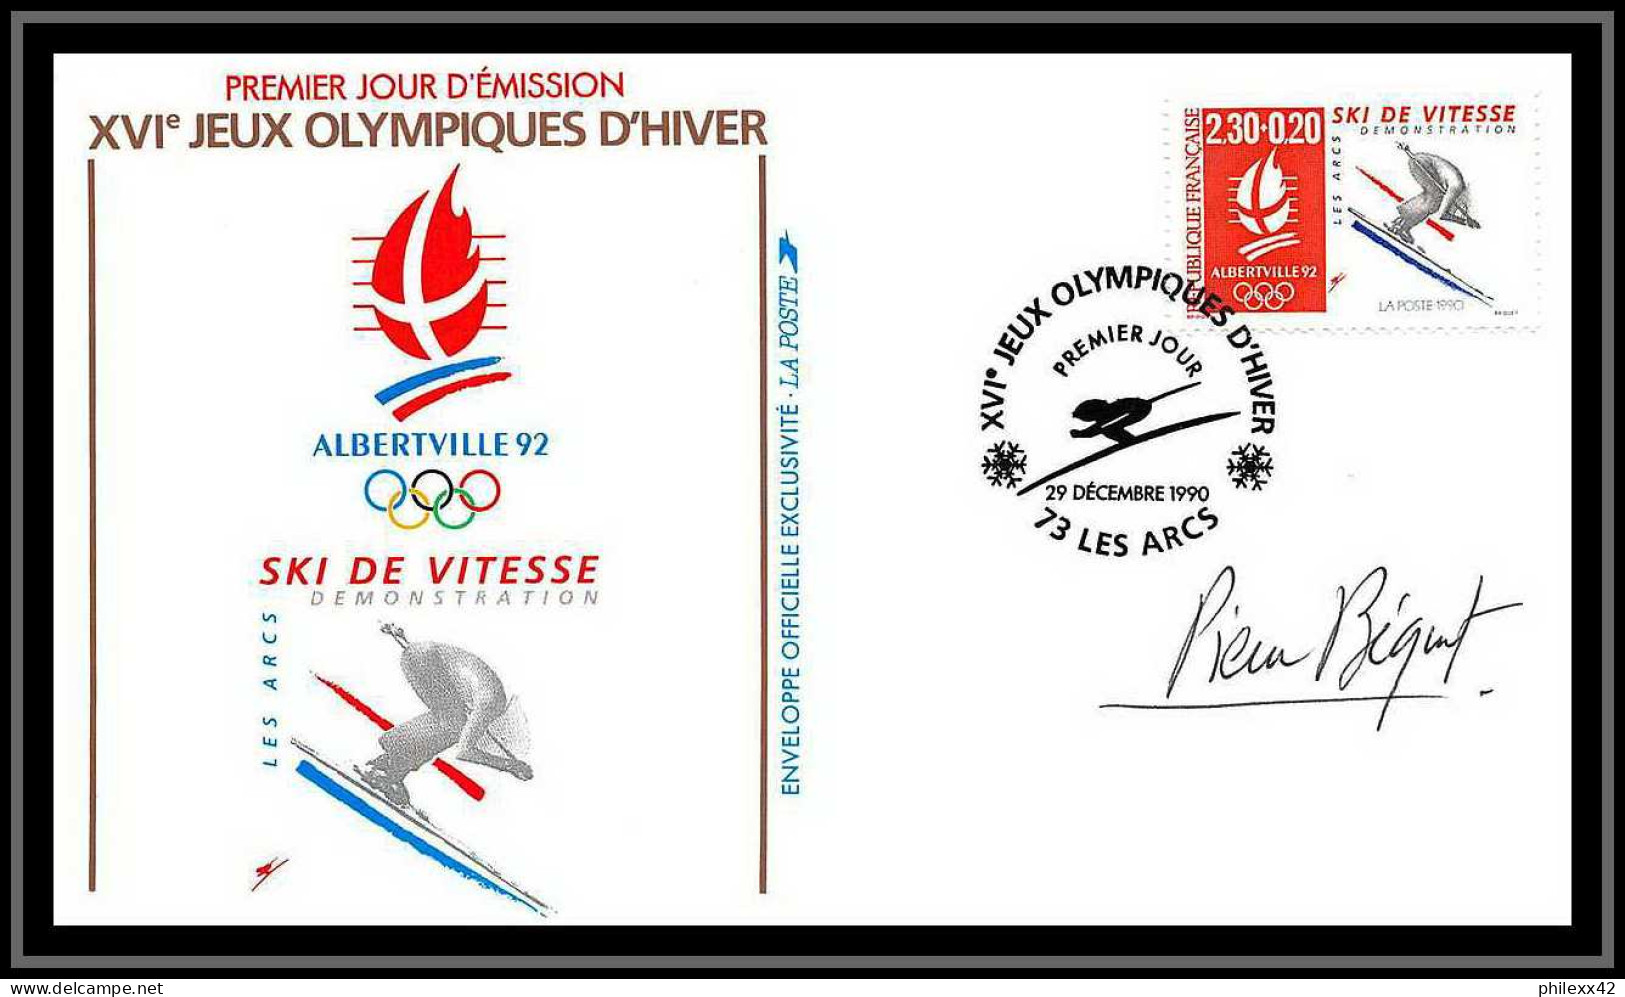 122 Lot de 10 lettres france jeux olympiques (olympic games) alberville 92 Signé (signed autograph) Pierre Béquet